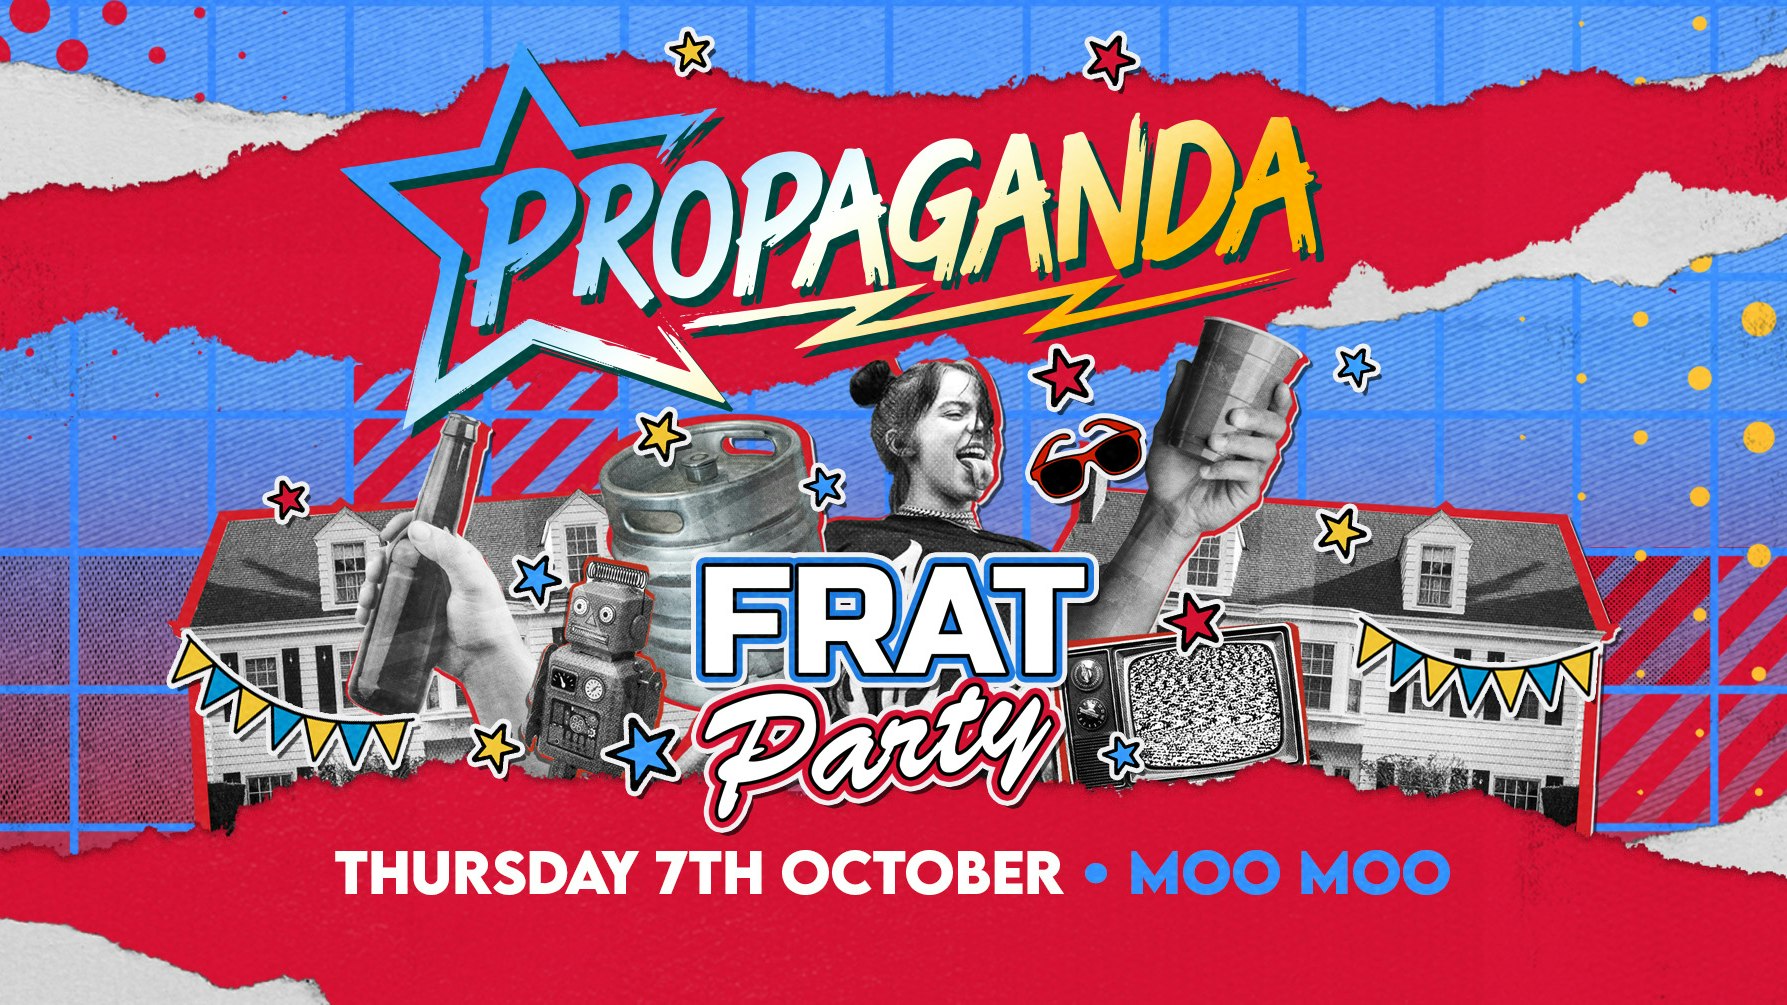 Propaganda Cheltenham – Frat Party!